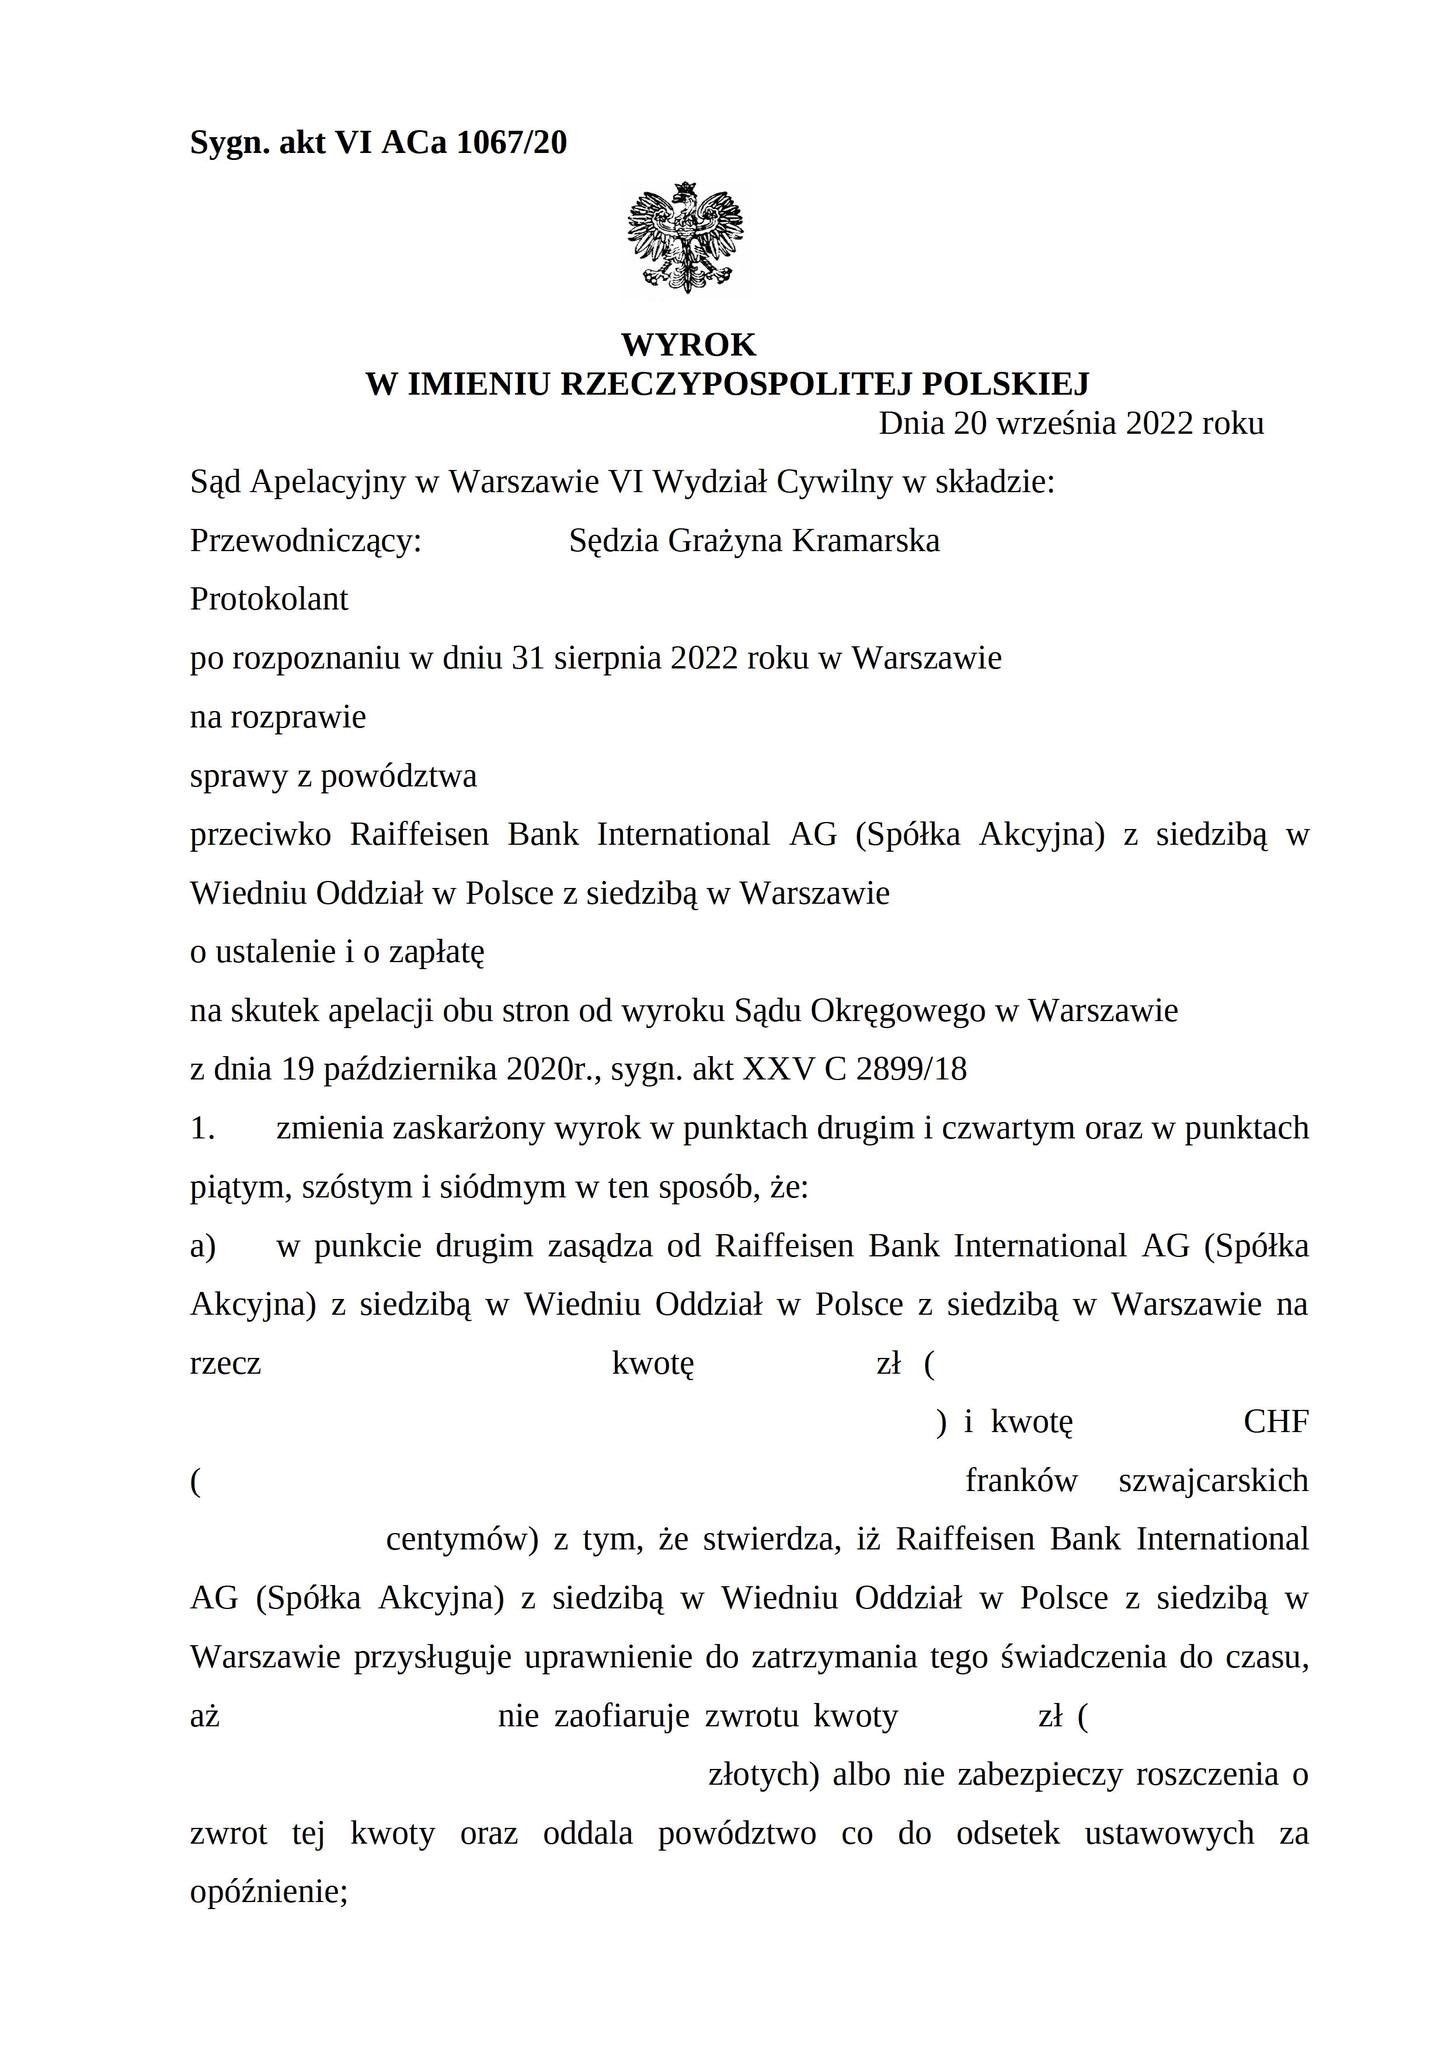 Wyrok Sądu Apelacyjnego w Warszawie z dnia 20.09.2022 r., sygn. akt VI ACa 1067/20